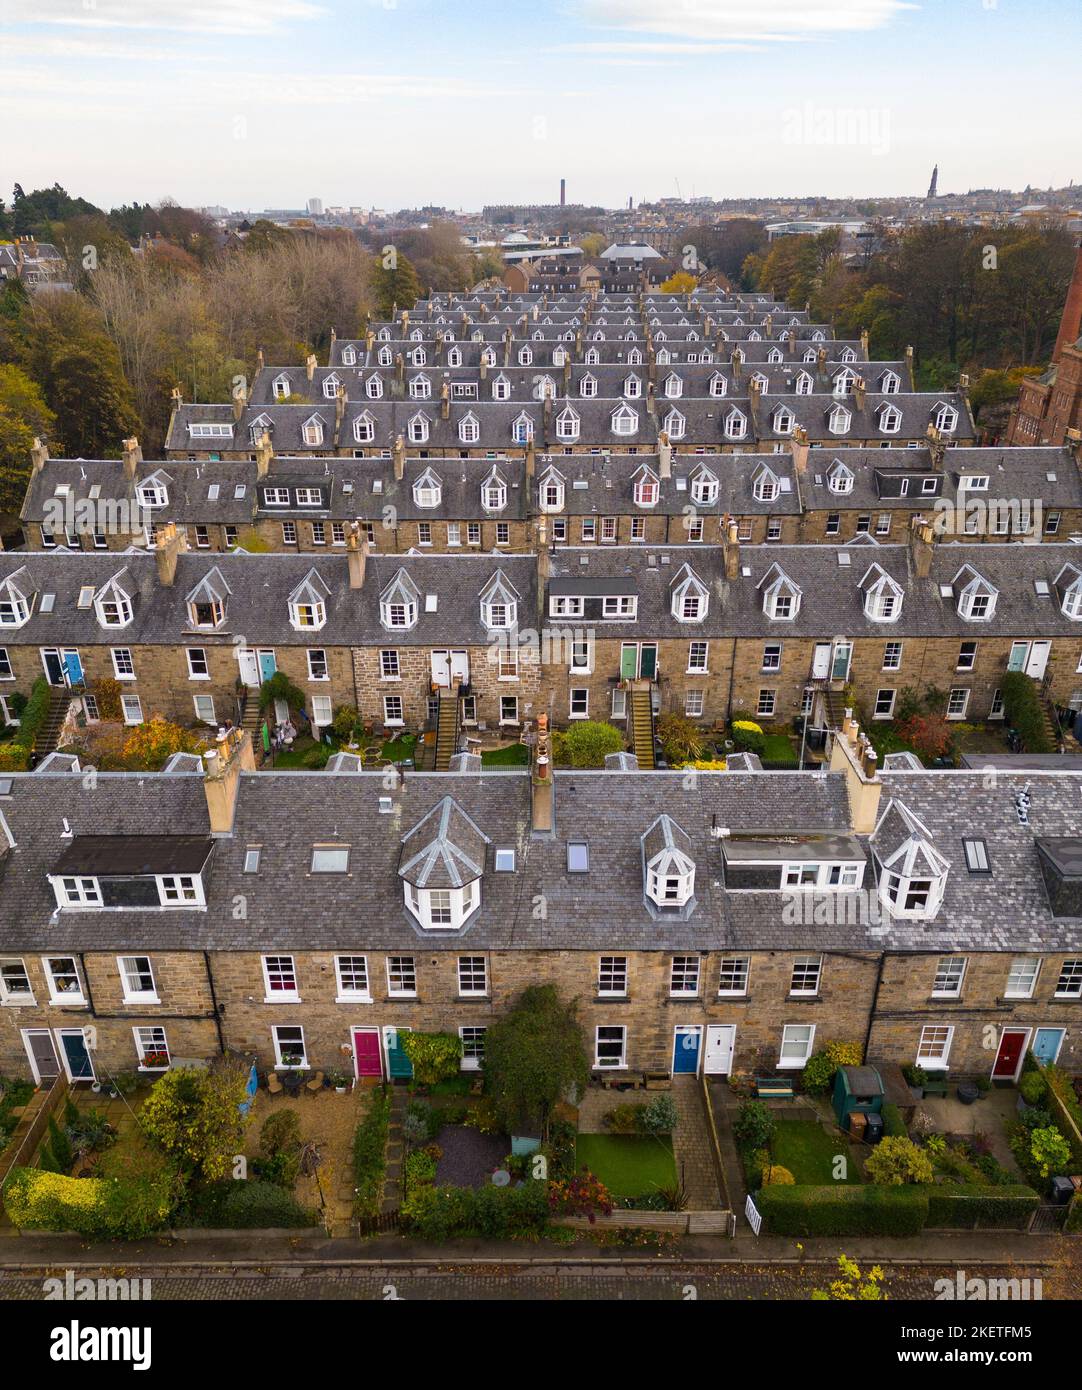 Vue aérienne des rangées de maisons de colonies en terrasse à Stockbridge, Édimbourg, Écosse, Royaume-Uni Banque D'Images